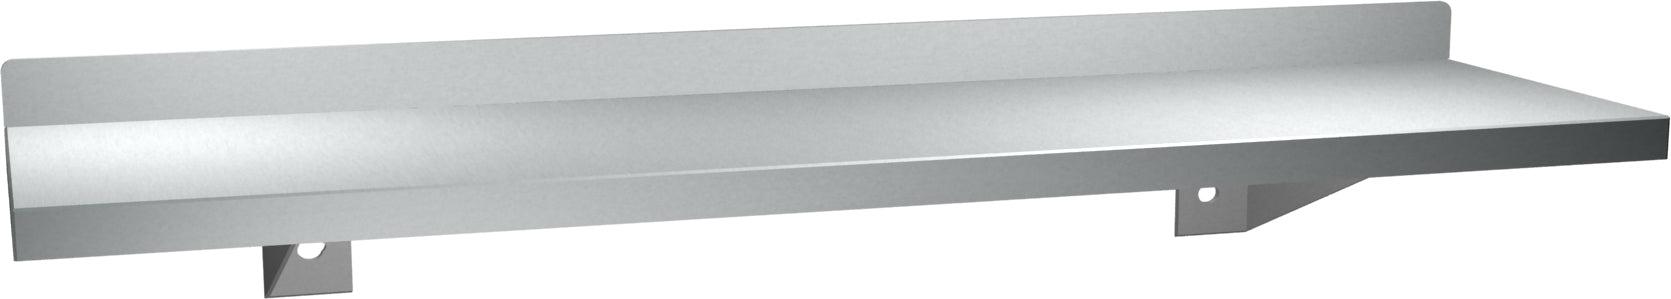 ASI 0694-60 Shelf With Backsplash, Stainless Steel, 5 X 60 Inch